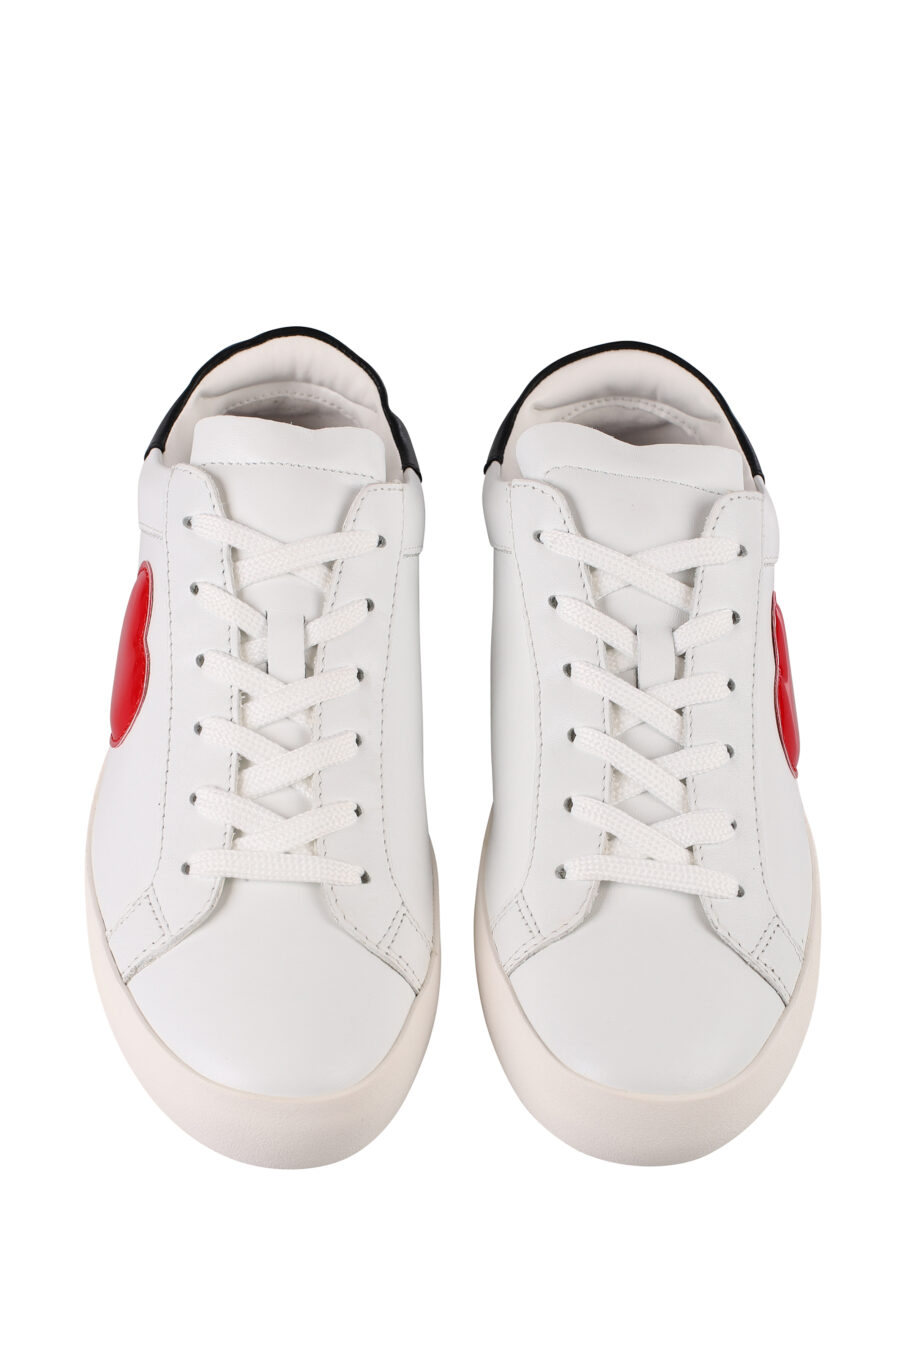 Zapatillas blancas con corazón rojo lateral y logo en suela - IMG 1231